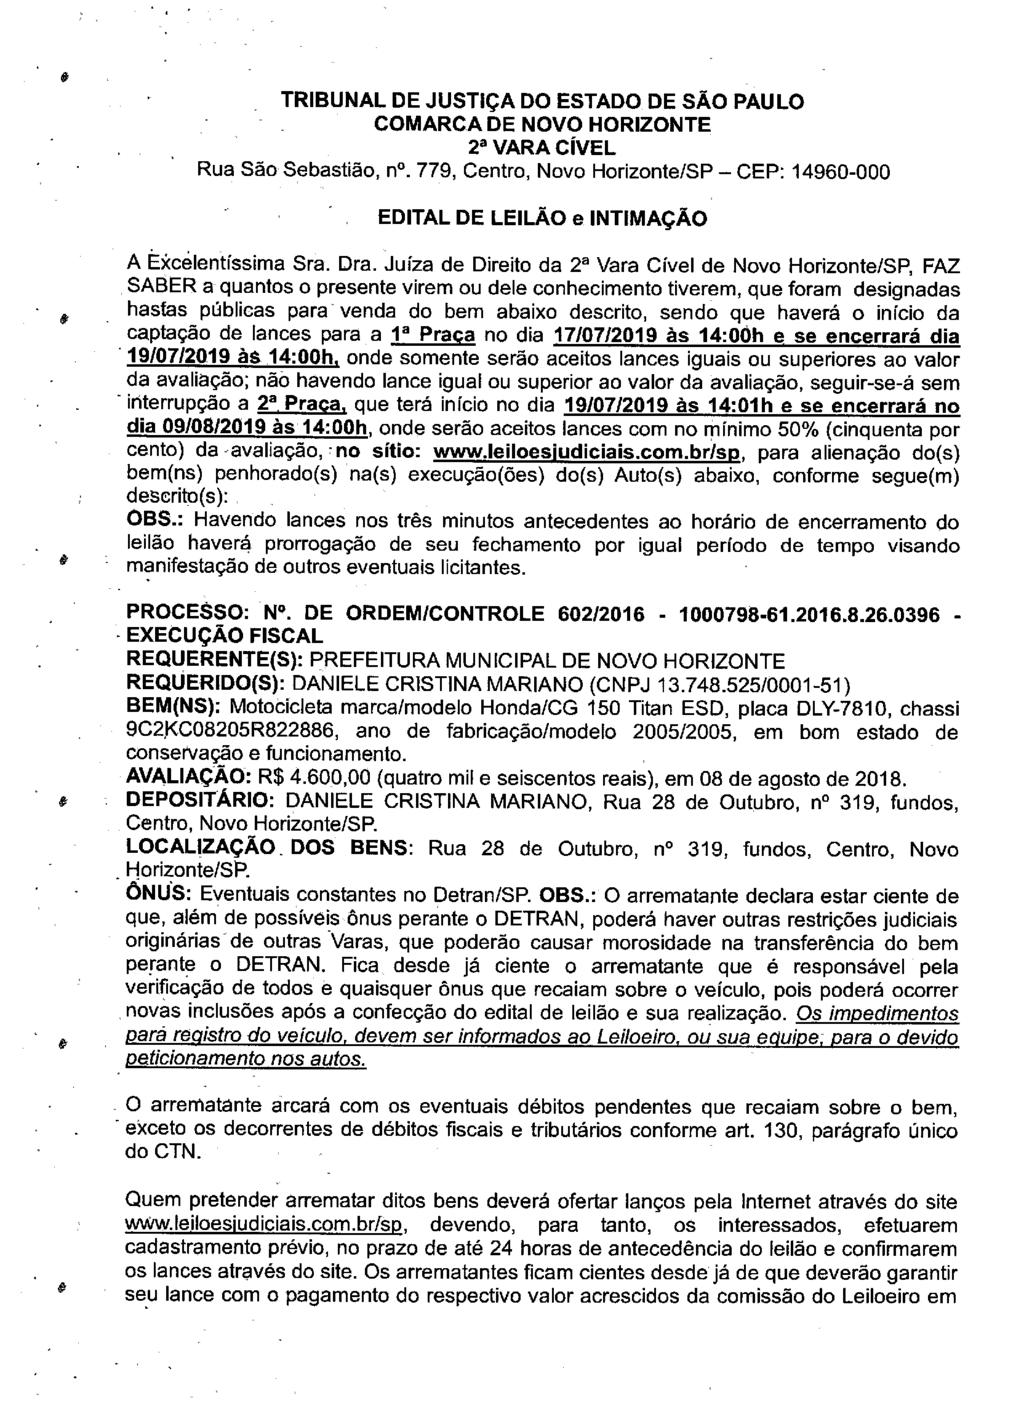 fls. 106 Este documento é cópia do original, assinado digitalmente por LUZIA REGIS DE OLIVEIRA DUARTE, liberado nos autos em 19/06/2019 às 13:14.